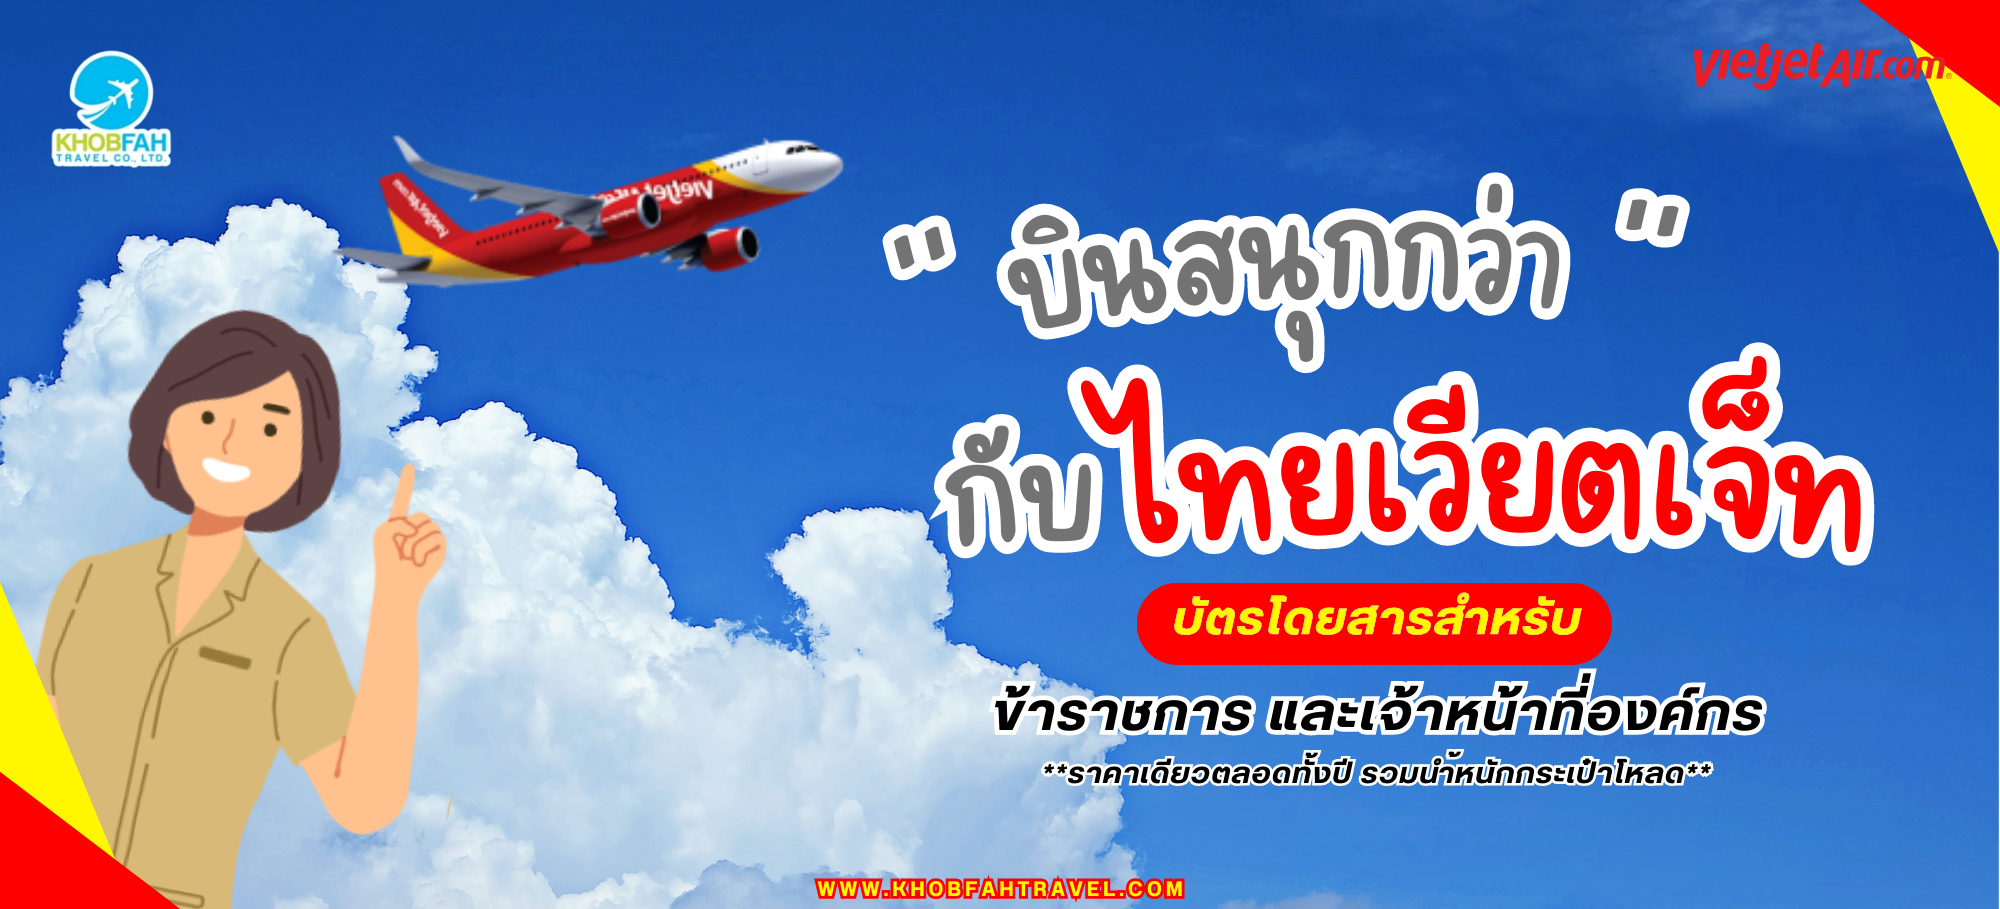 ตั๋วข้าราชการ และ พนักงานรัฐวิสาหกิจ สายการบินไทย เวียตเจ็ท (Vietjet Air Government Ticket)